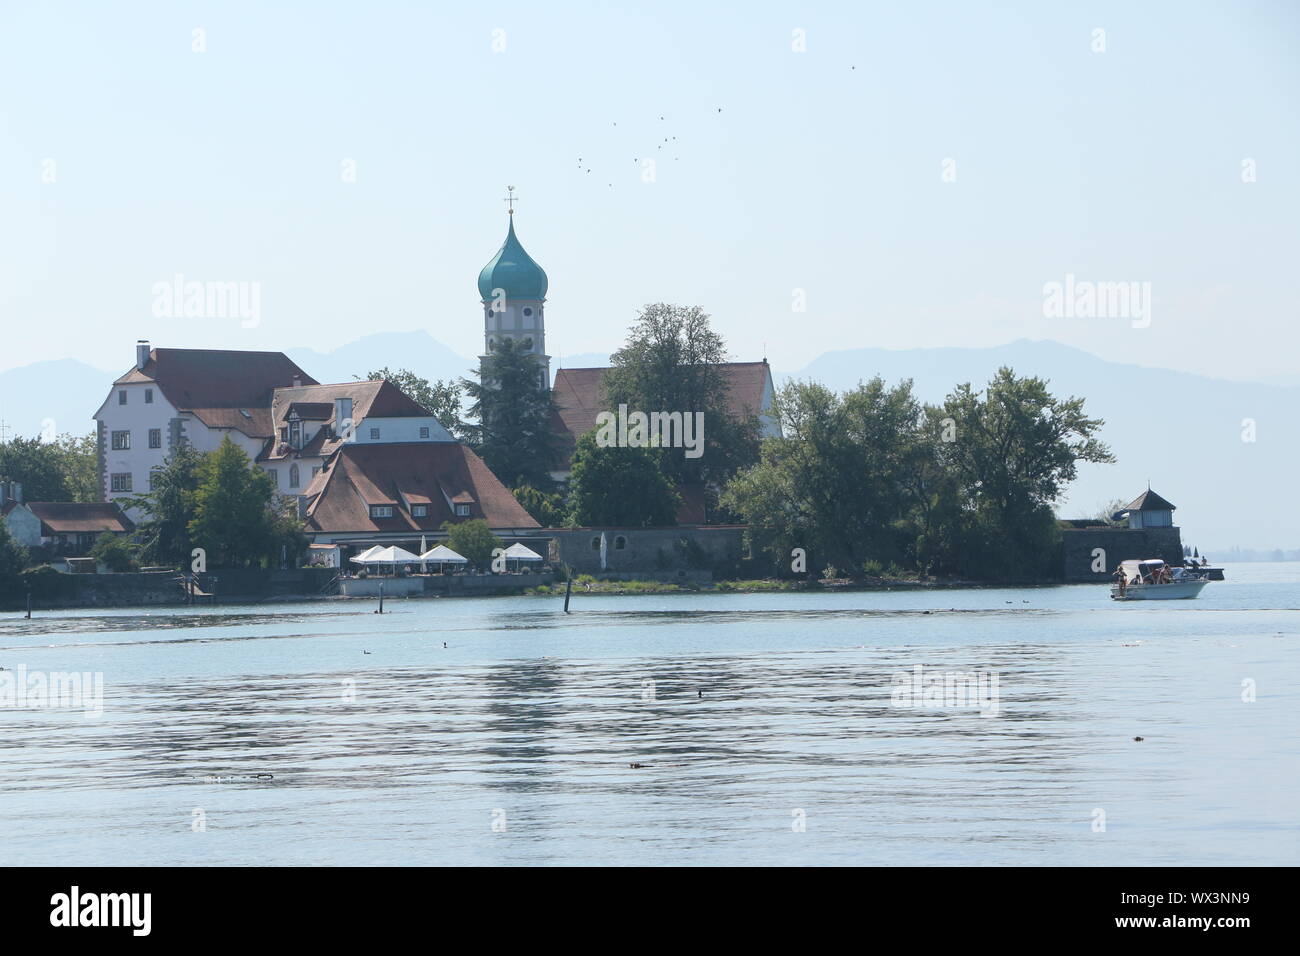 Impressionen vom Bodensee in Süddeutschland Stock Photo